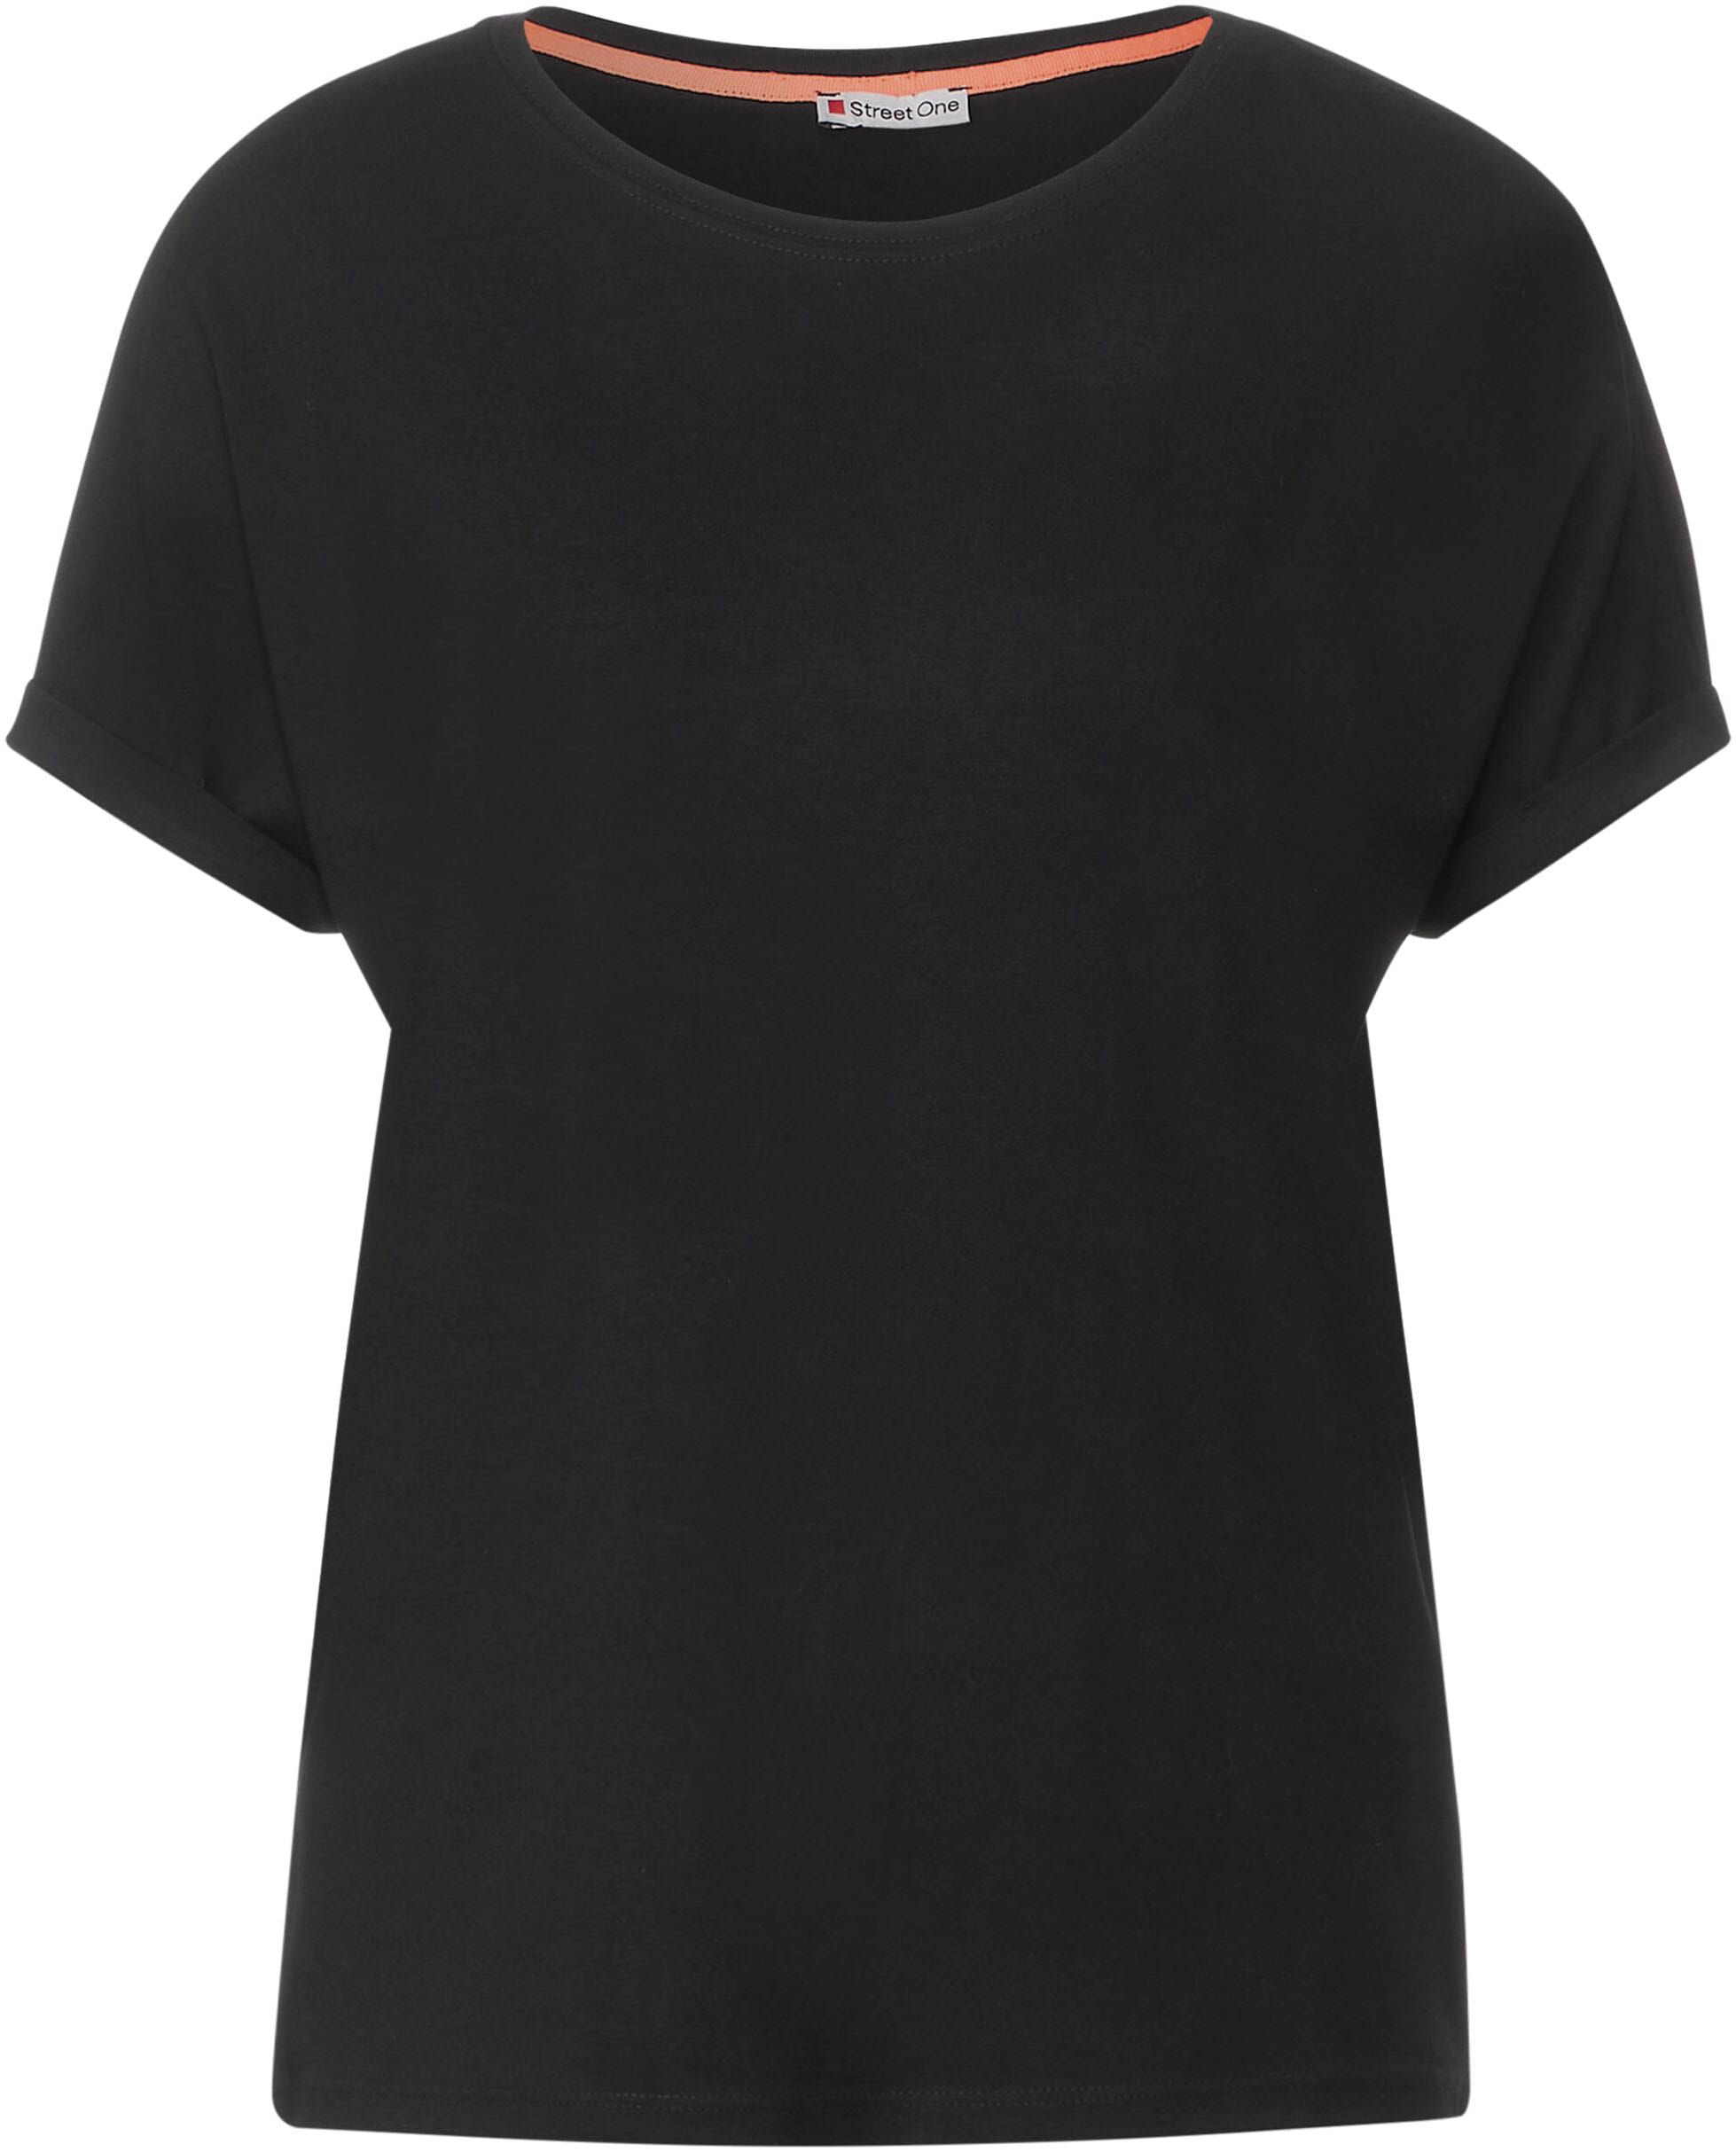 STREET ONE T-Shirt, im Style Crista online kaufen bei Jelmoli-Versand  Schweiz